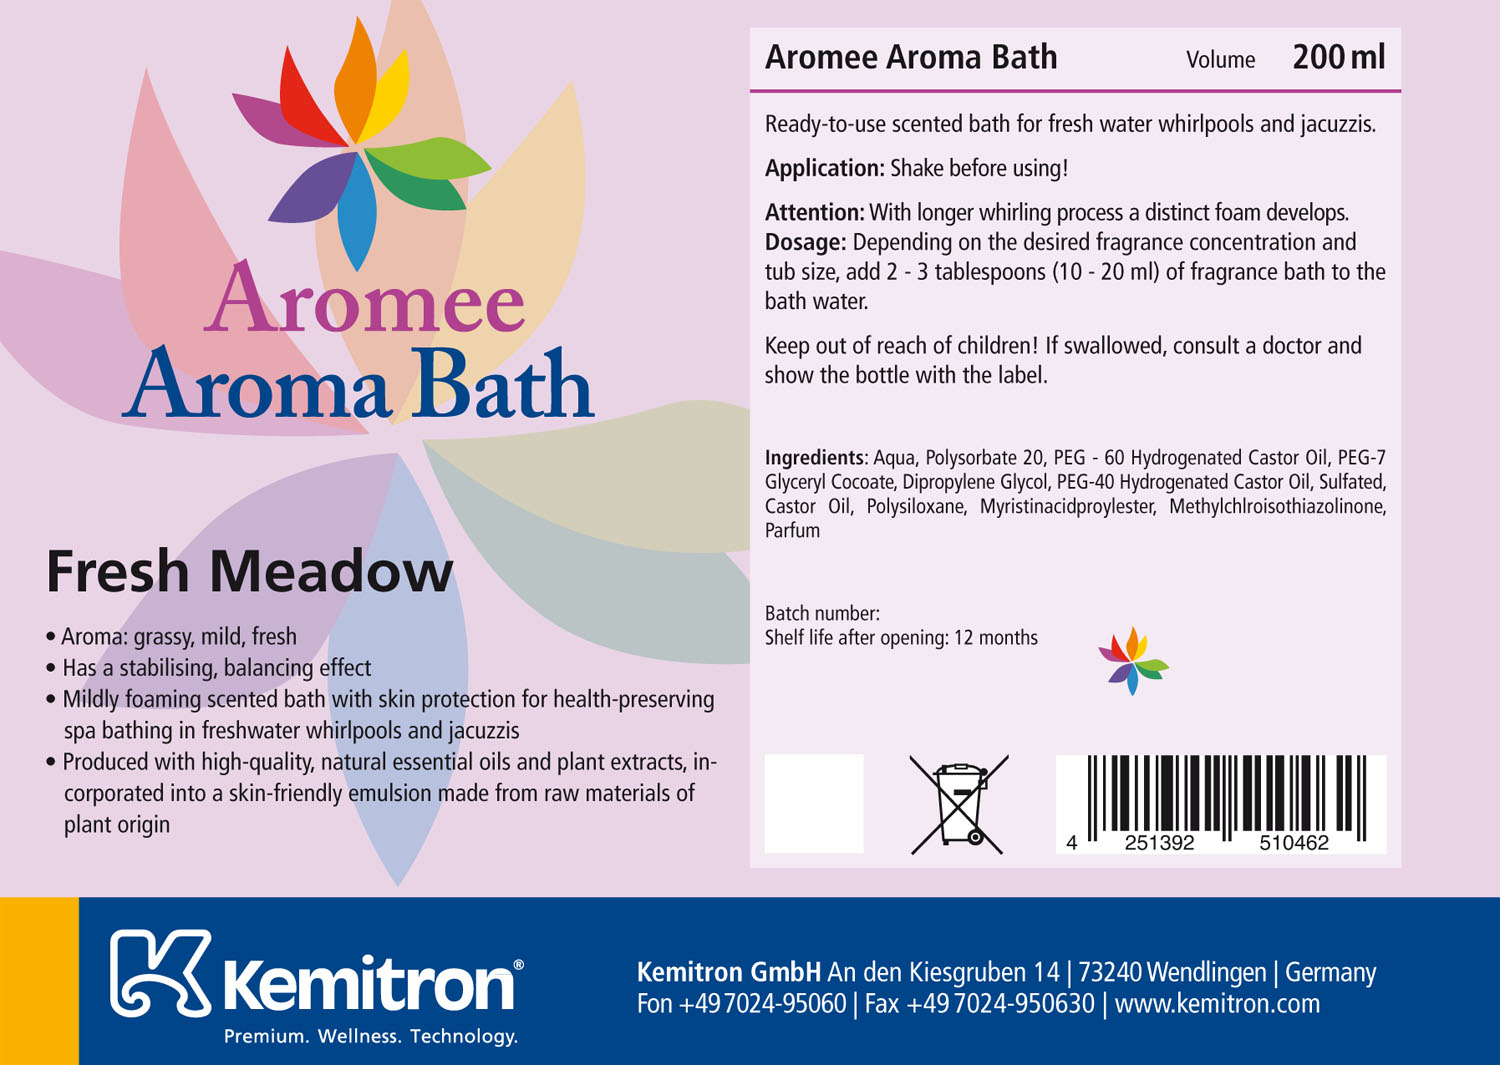 Aromee Aromabath "Fresh Meadow"